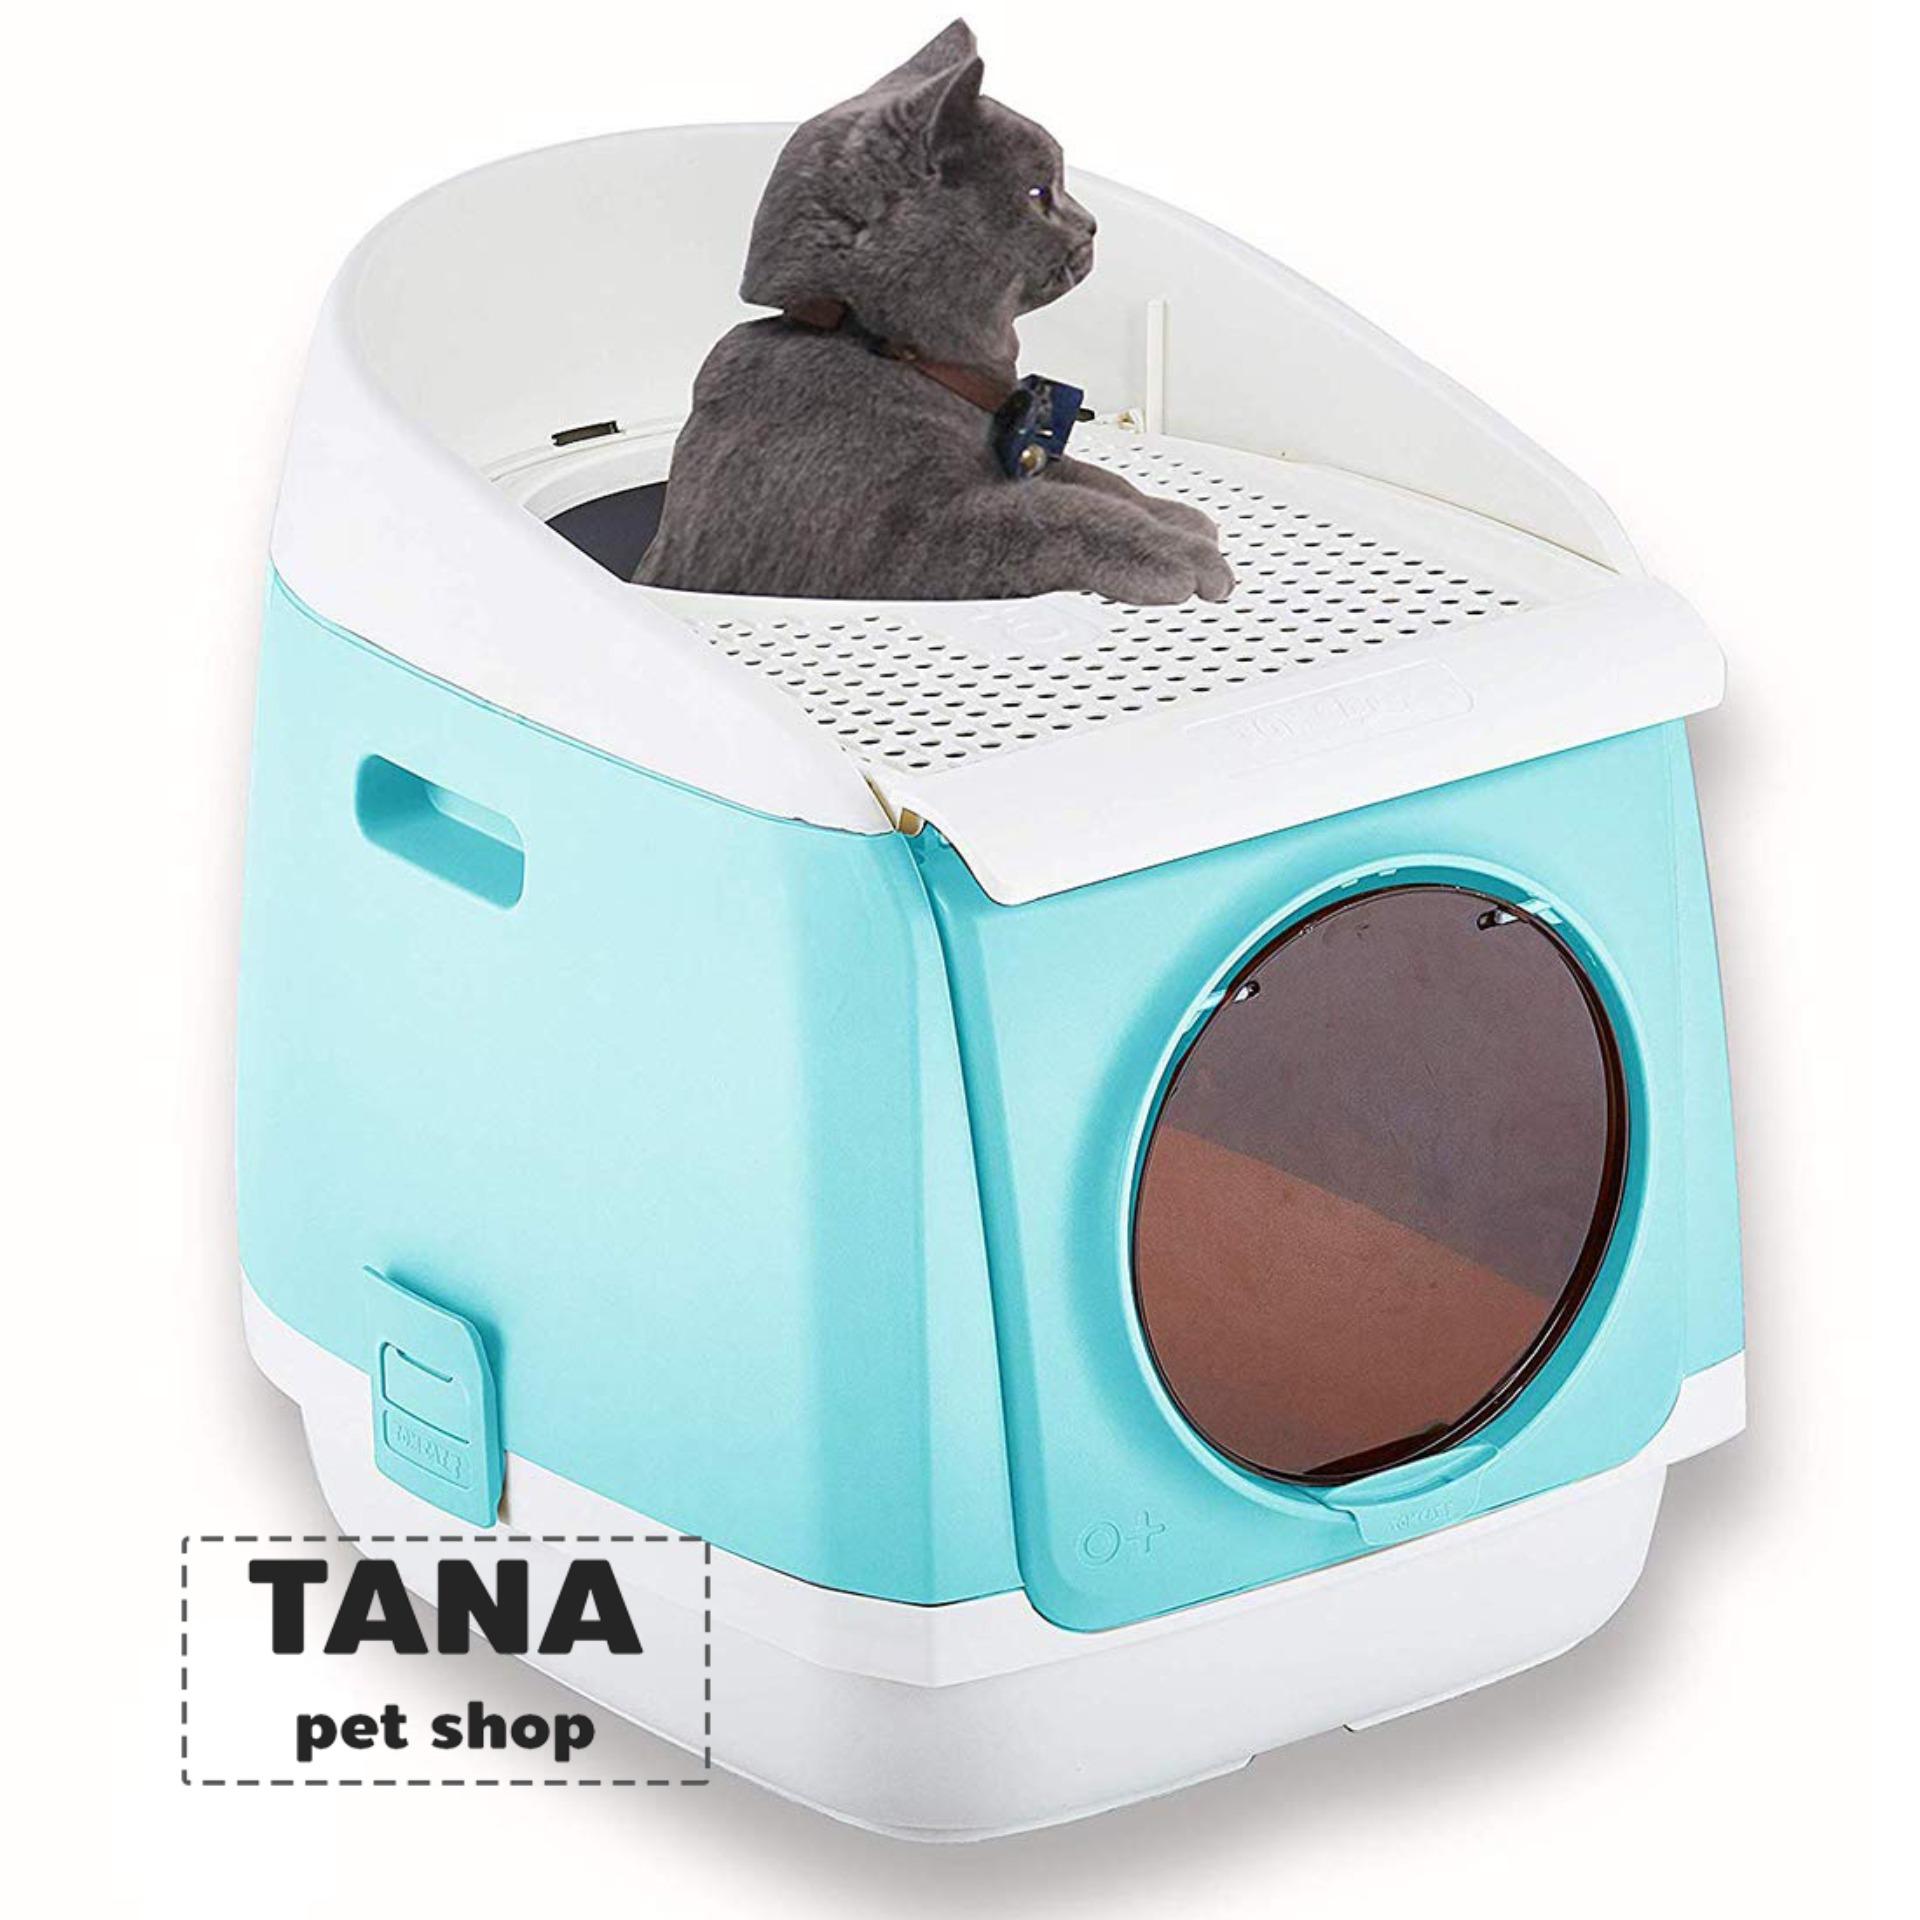 Tom Cat Toilet ห้องน้ำแมว กระบะทรายแมว รุ่นโดมอวกาศ เข้าได้ 2 ทาง สำหรับแมว ขนาด 46x55x49 ซม. ฟรี! ท